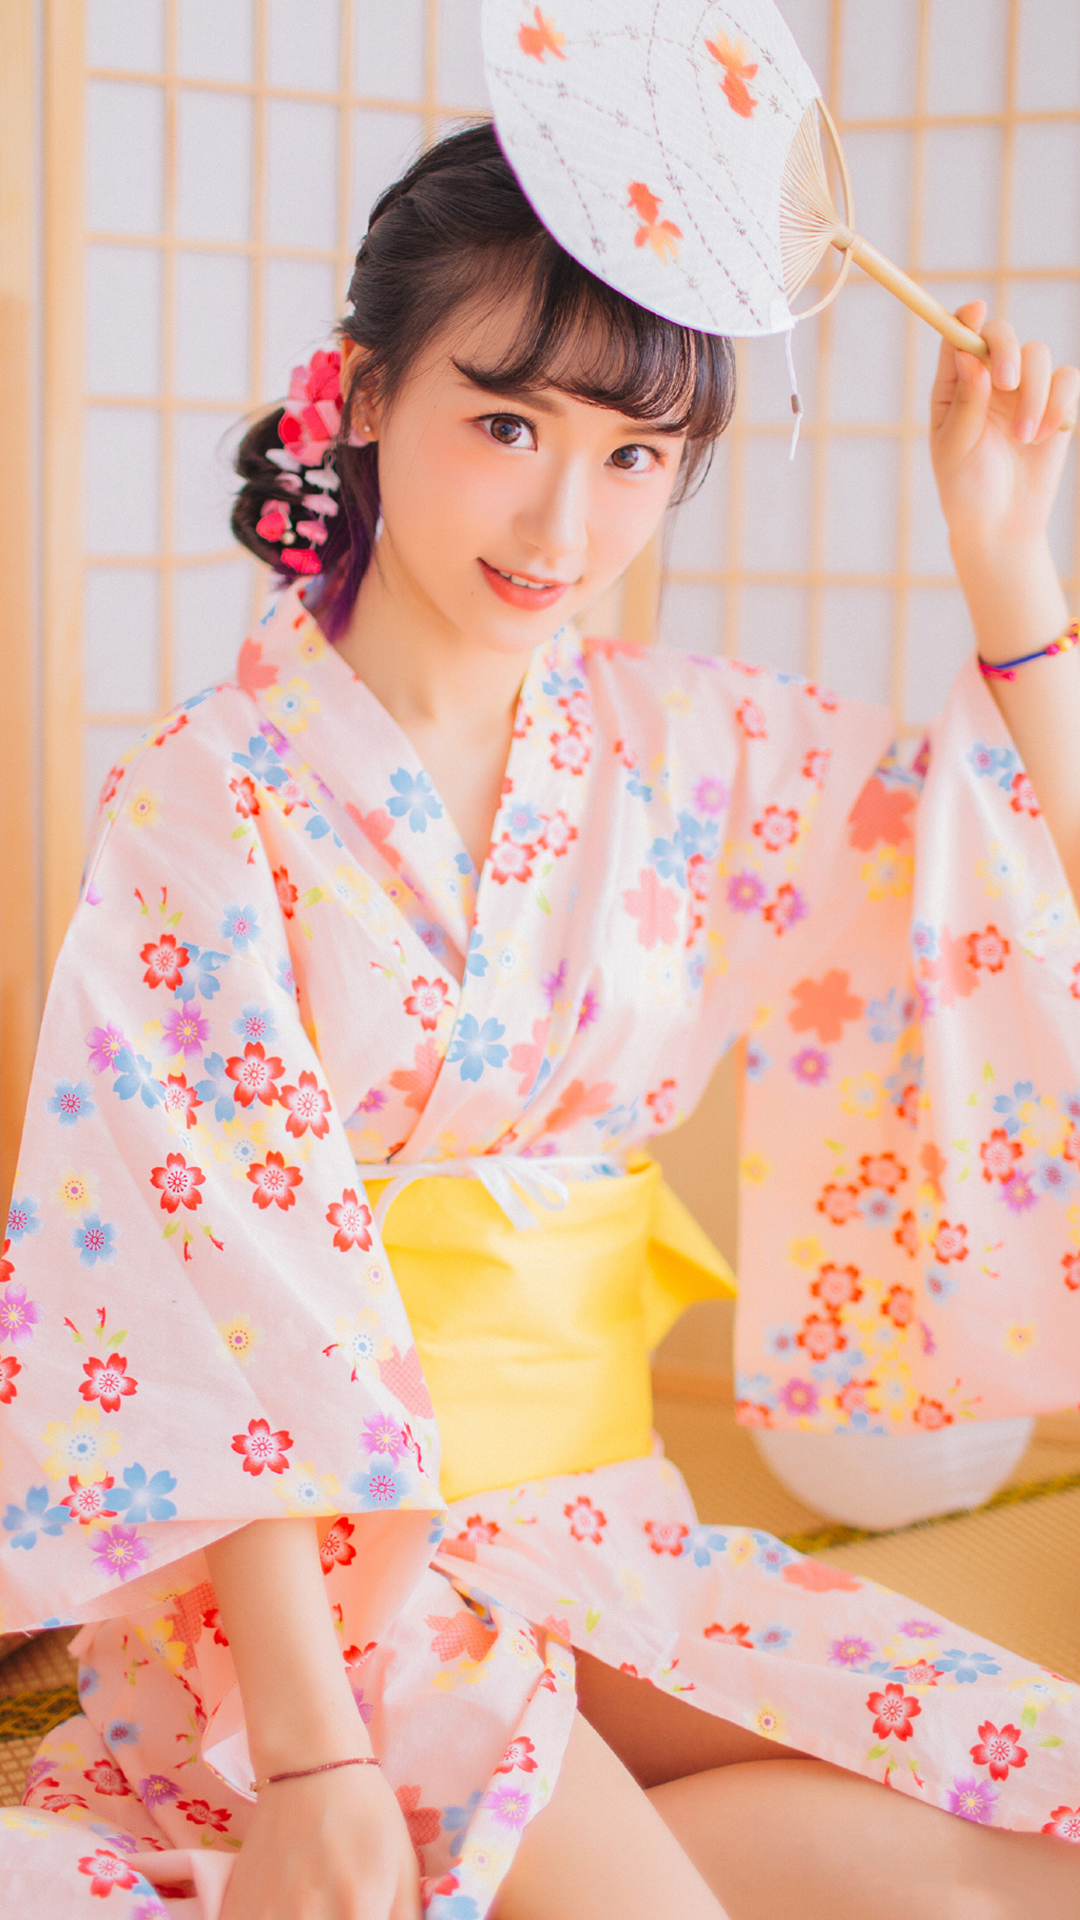 日本和服美女性感图片 第一张